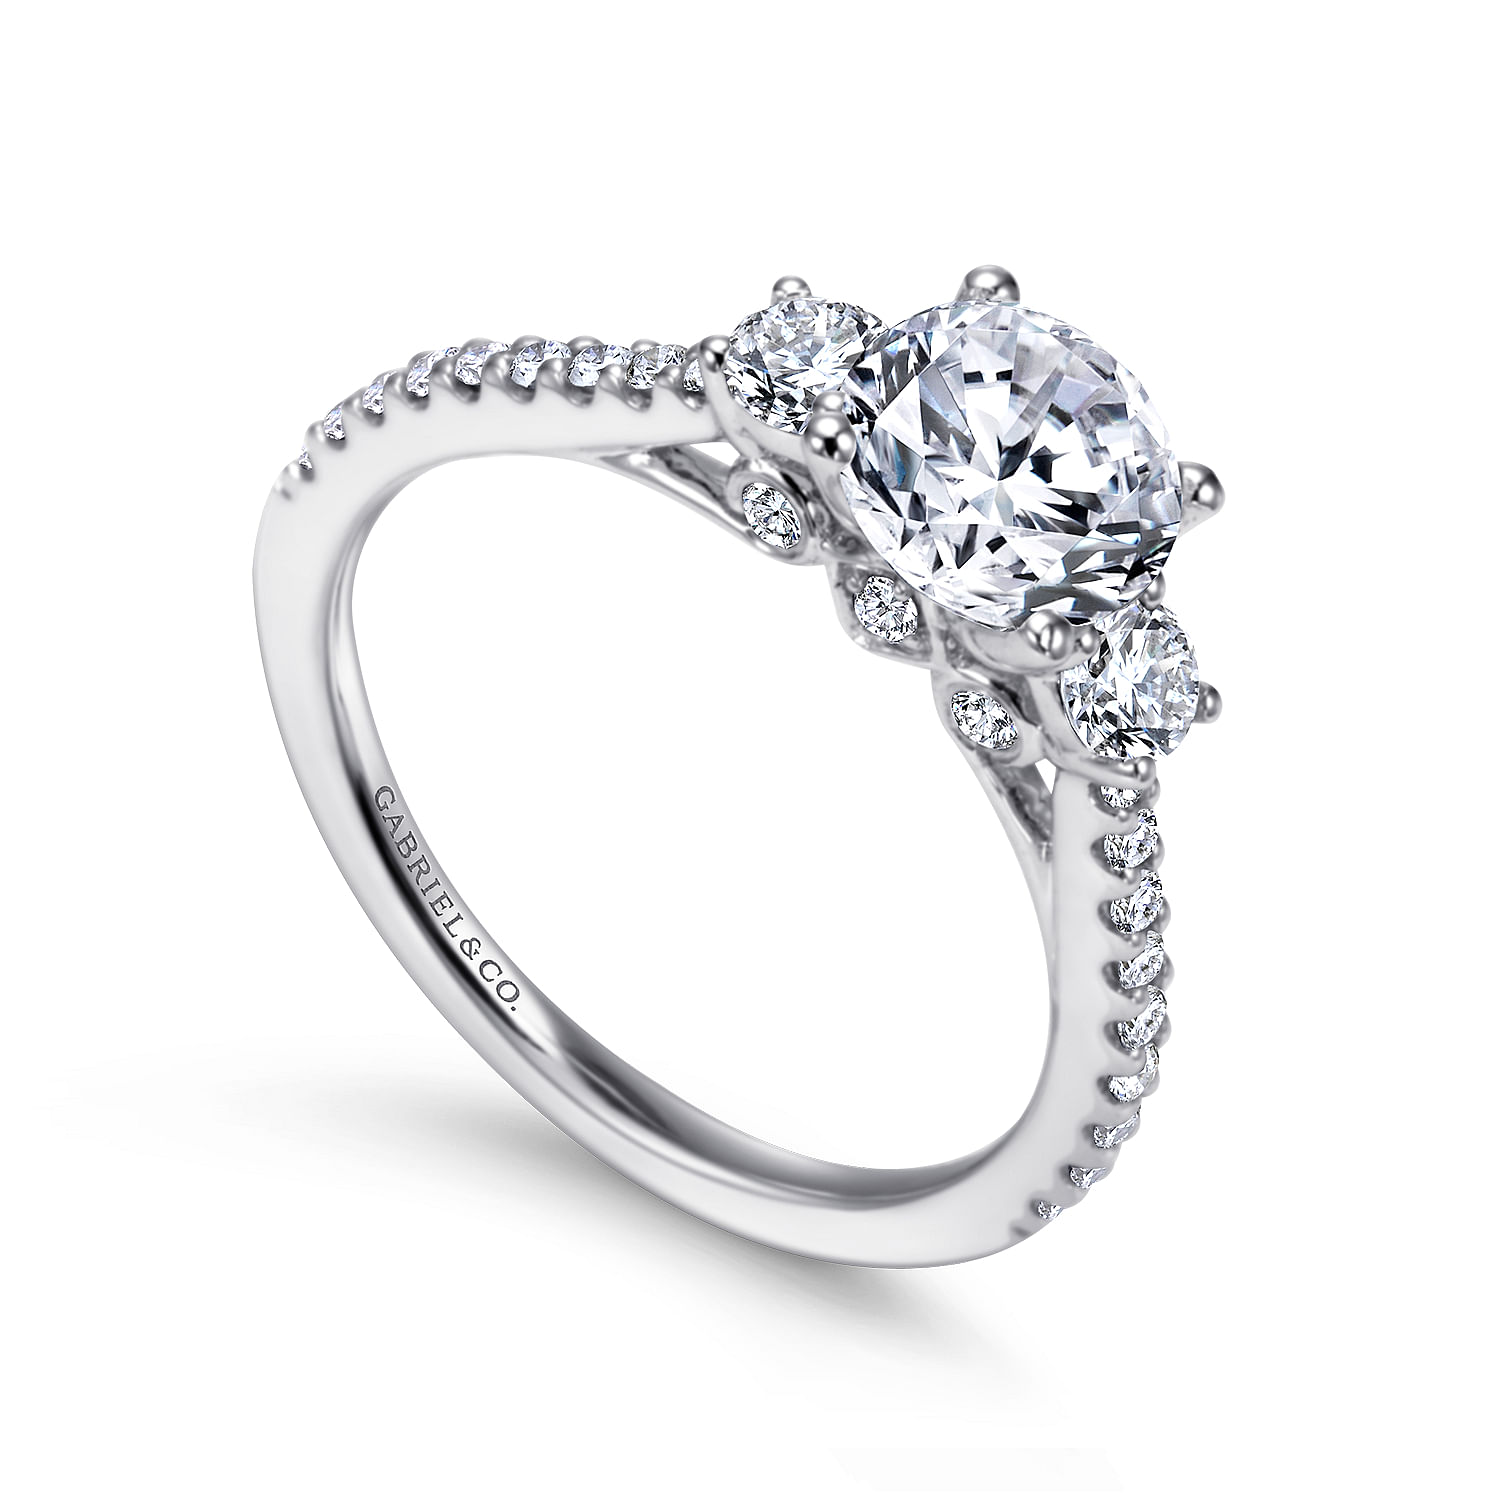 Chantal - 14K White Gold Round Three Stone Diamond Engagement Ring